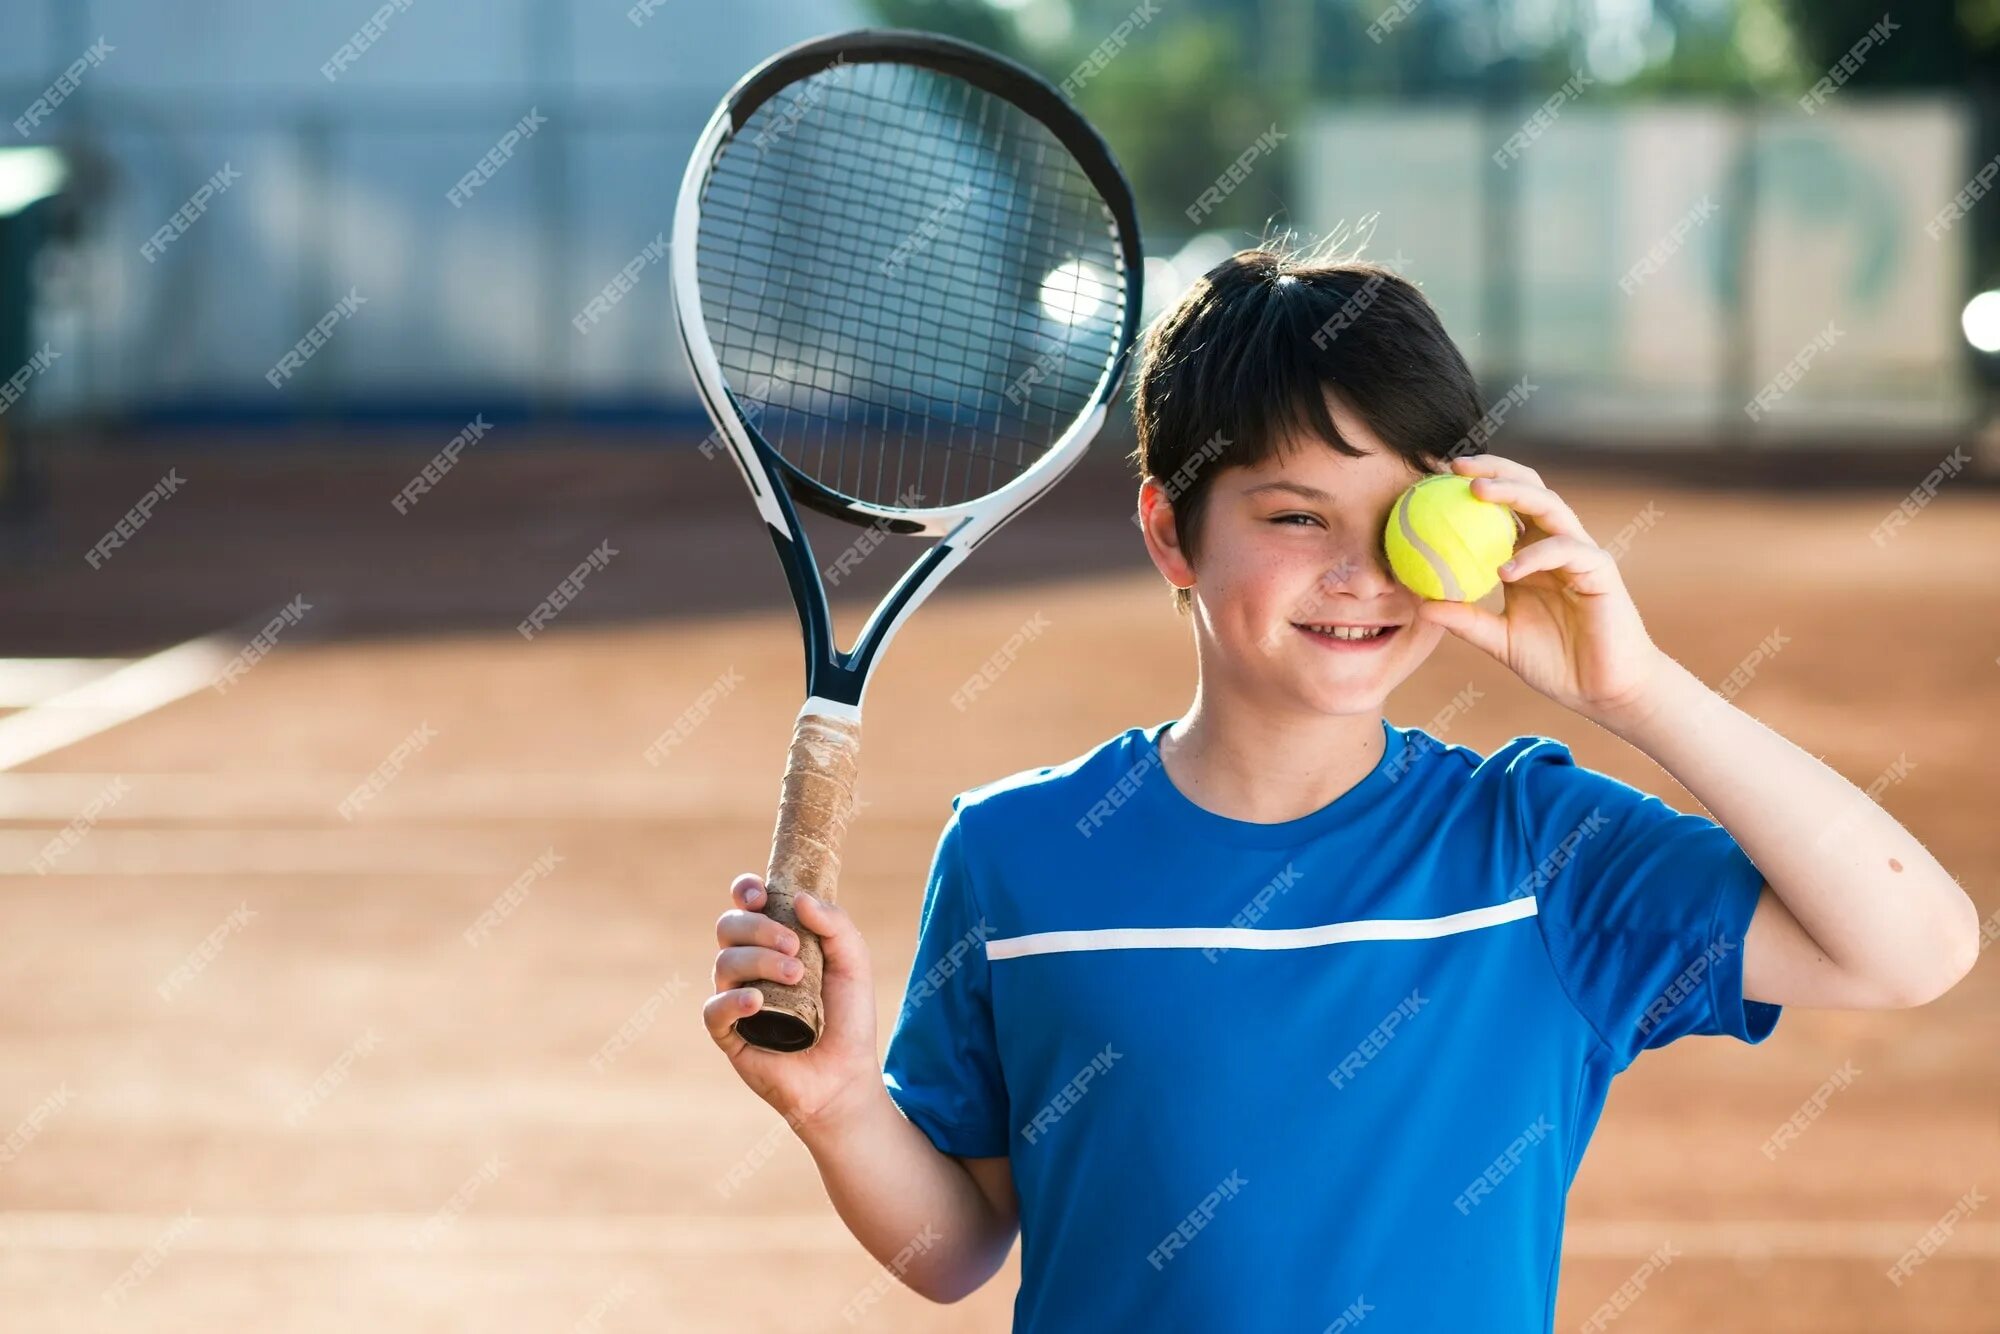 Мяч для тенниса. Теннис дети. Ребенок с теннисным мячом. Парень с теннисными ракетками и мячом. I can play tennis